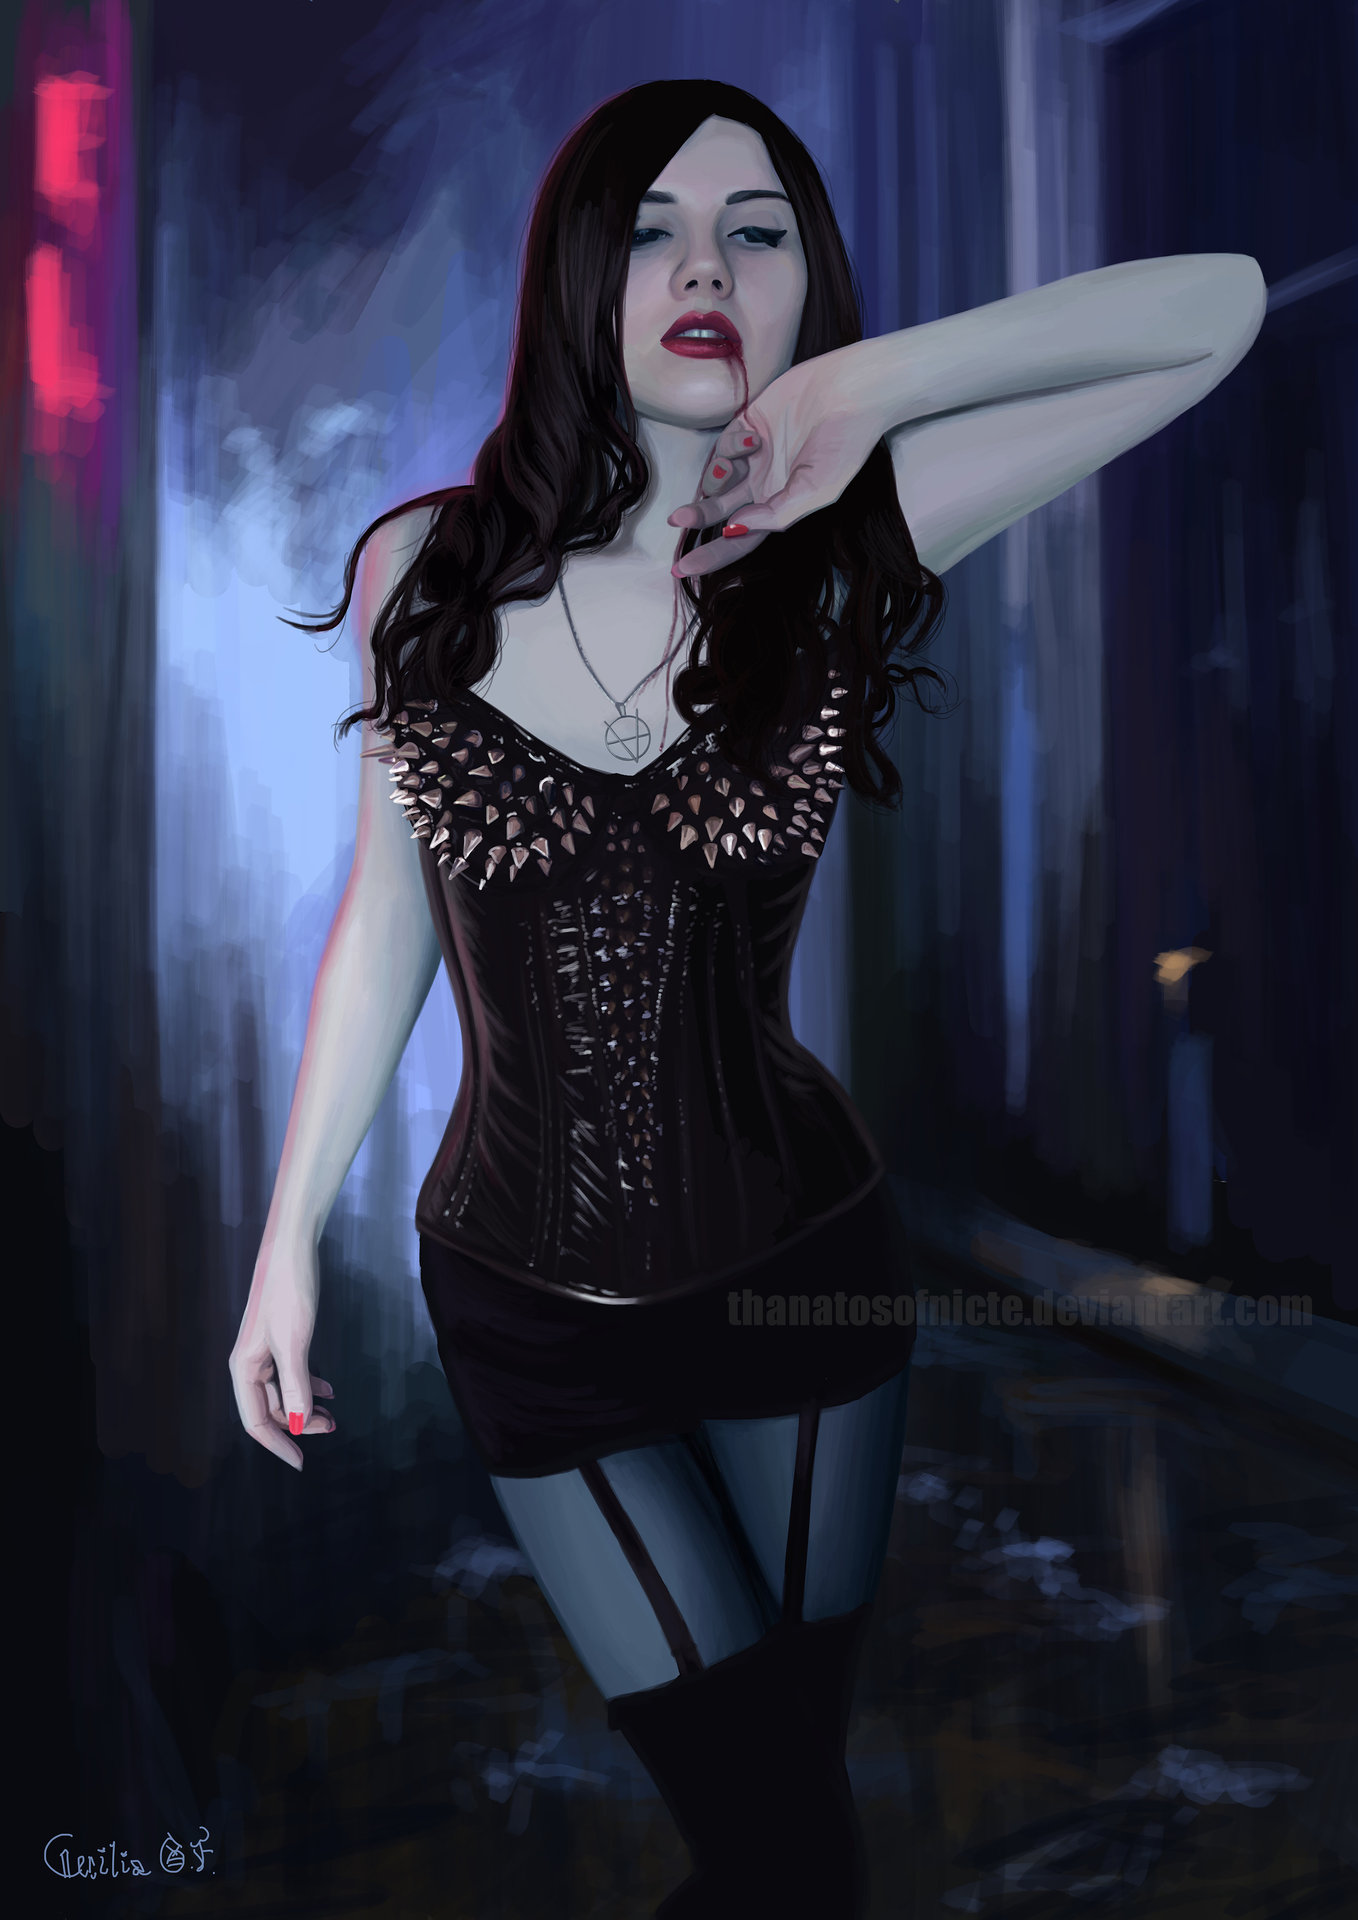 Fan art - Vampire: The Masquerade Stock: http://damseldams.deviantart.com/a...